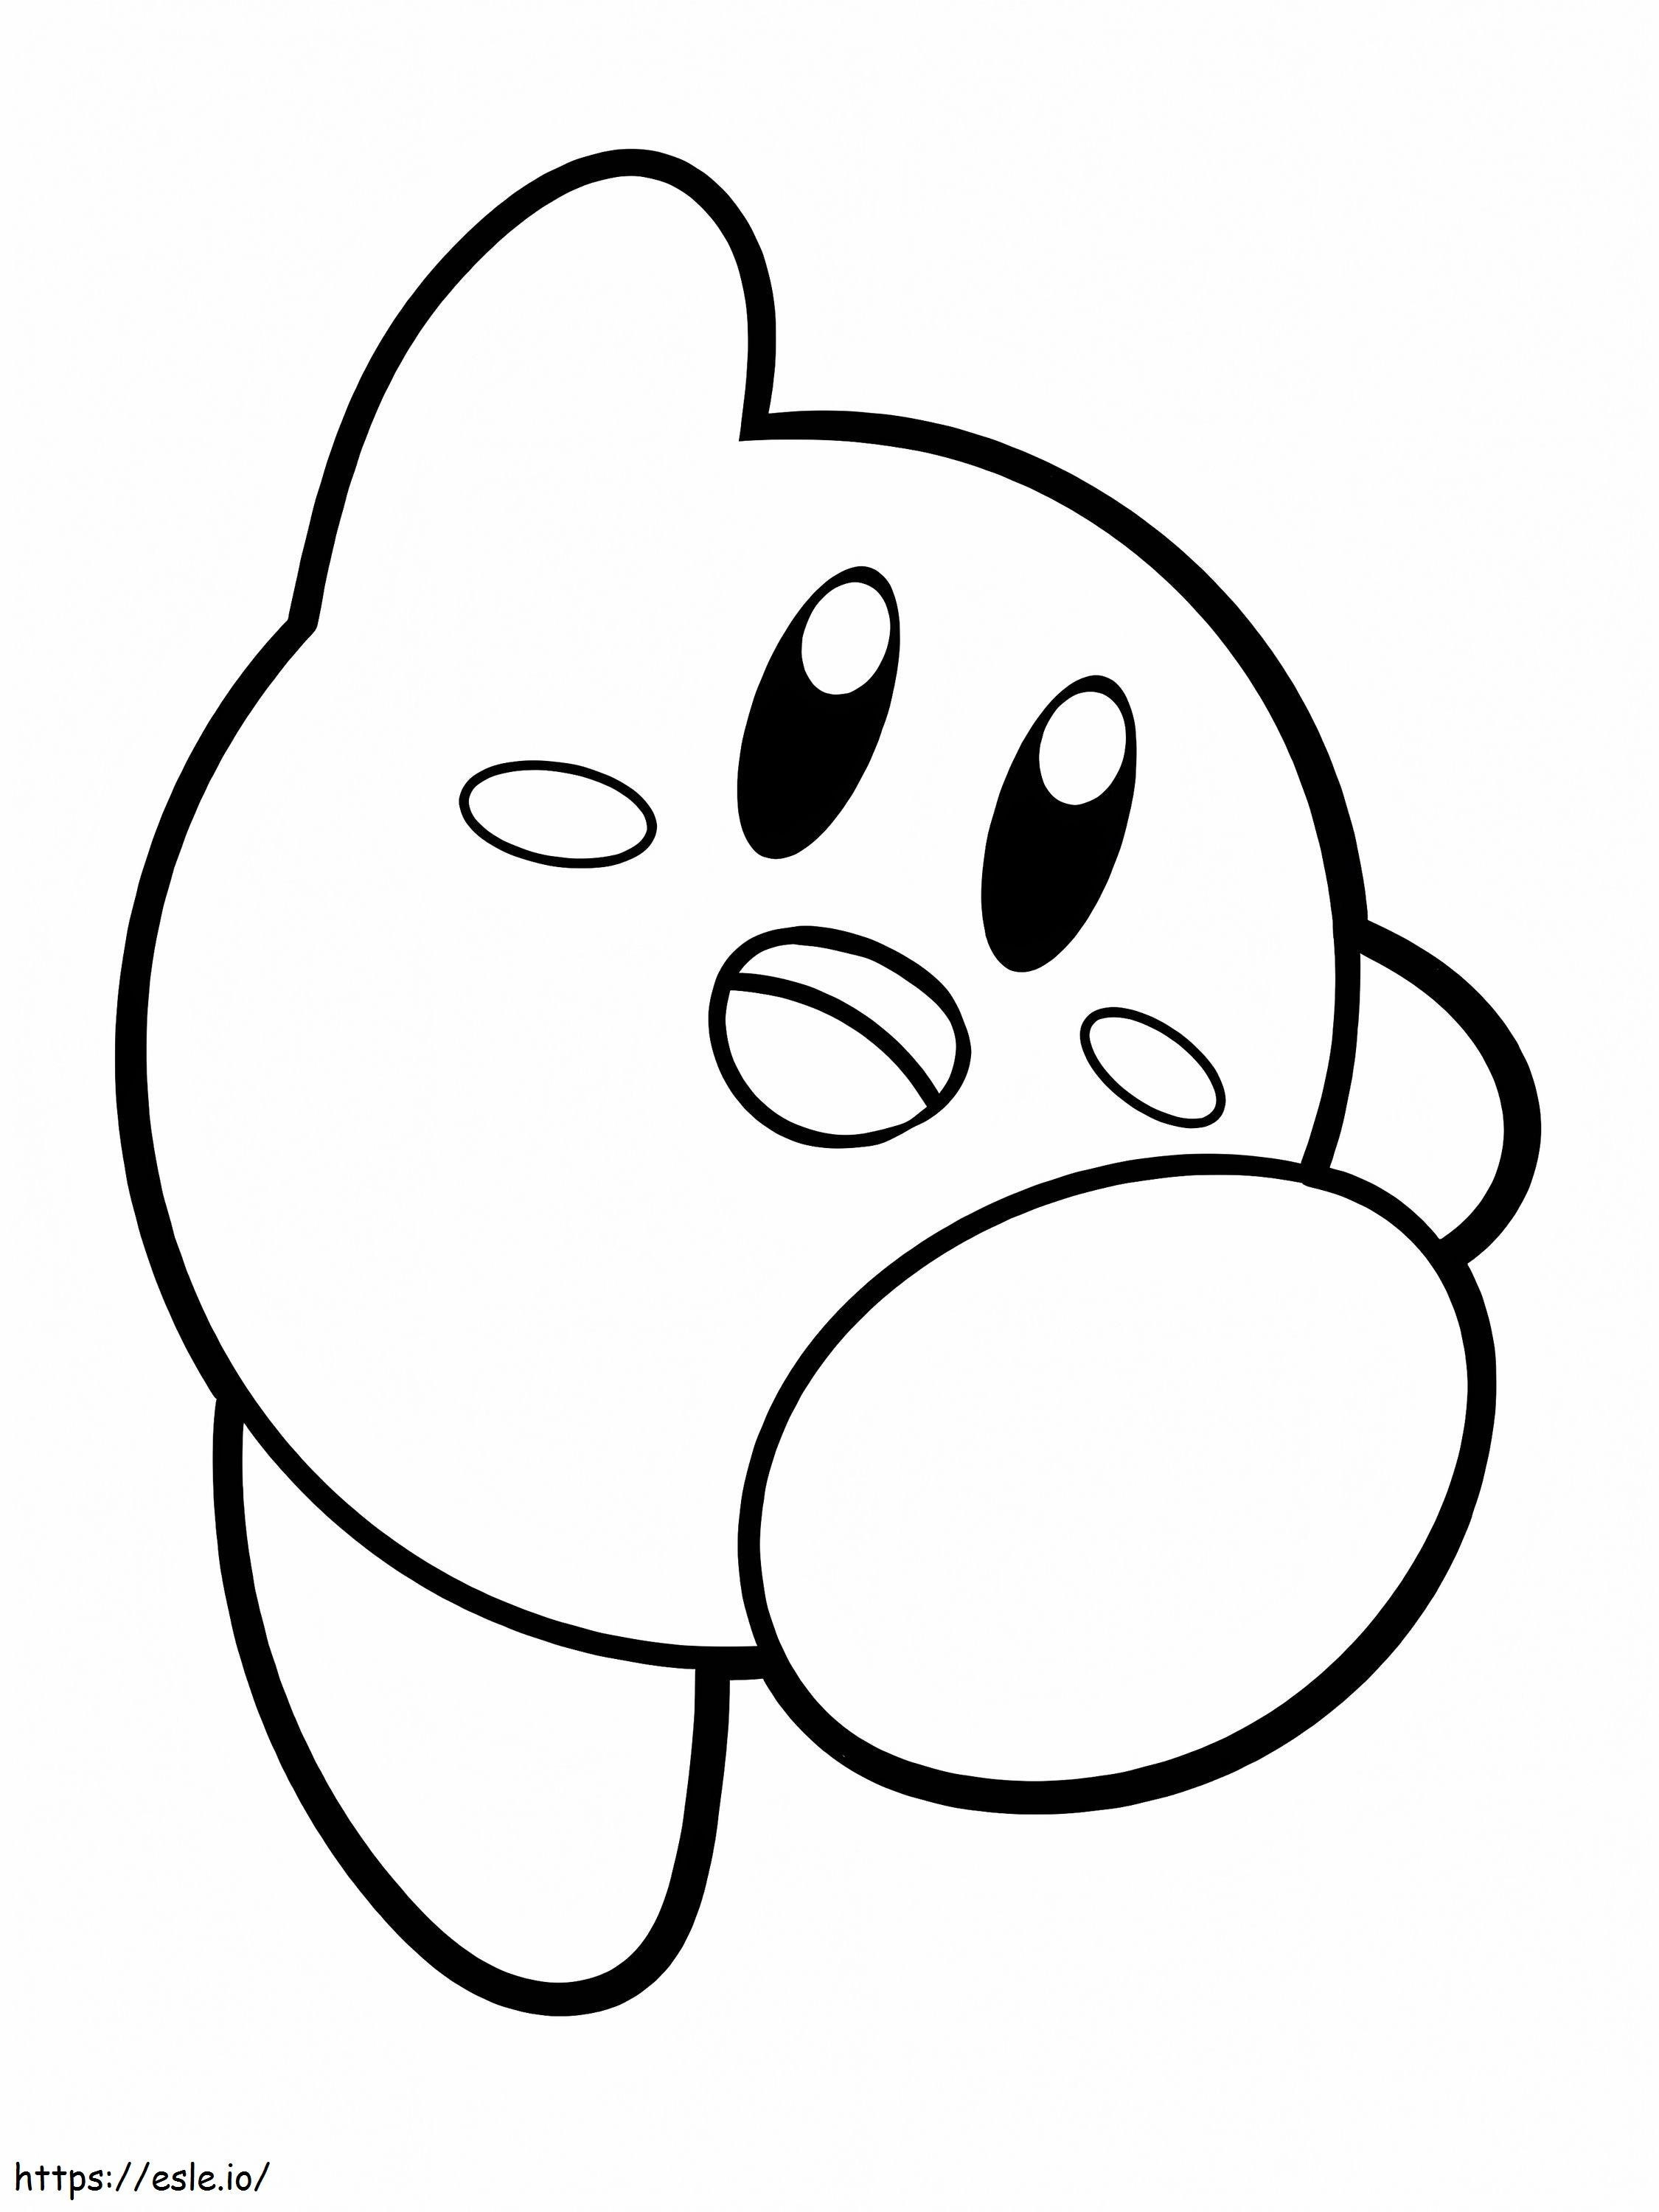 Kirby Amical kleurplaat kleurplaat